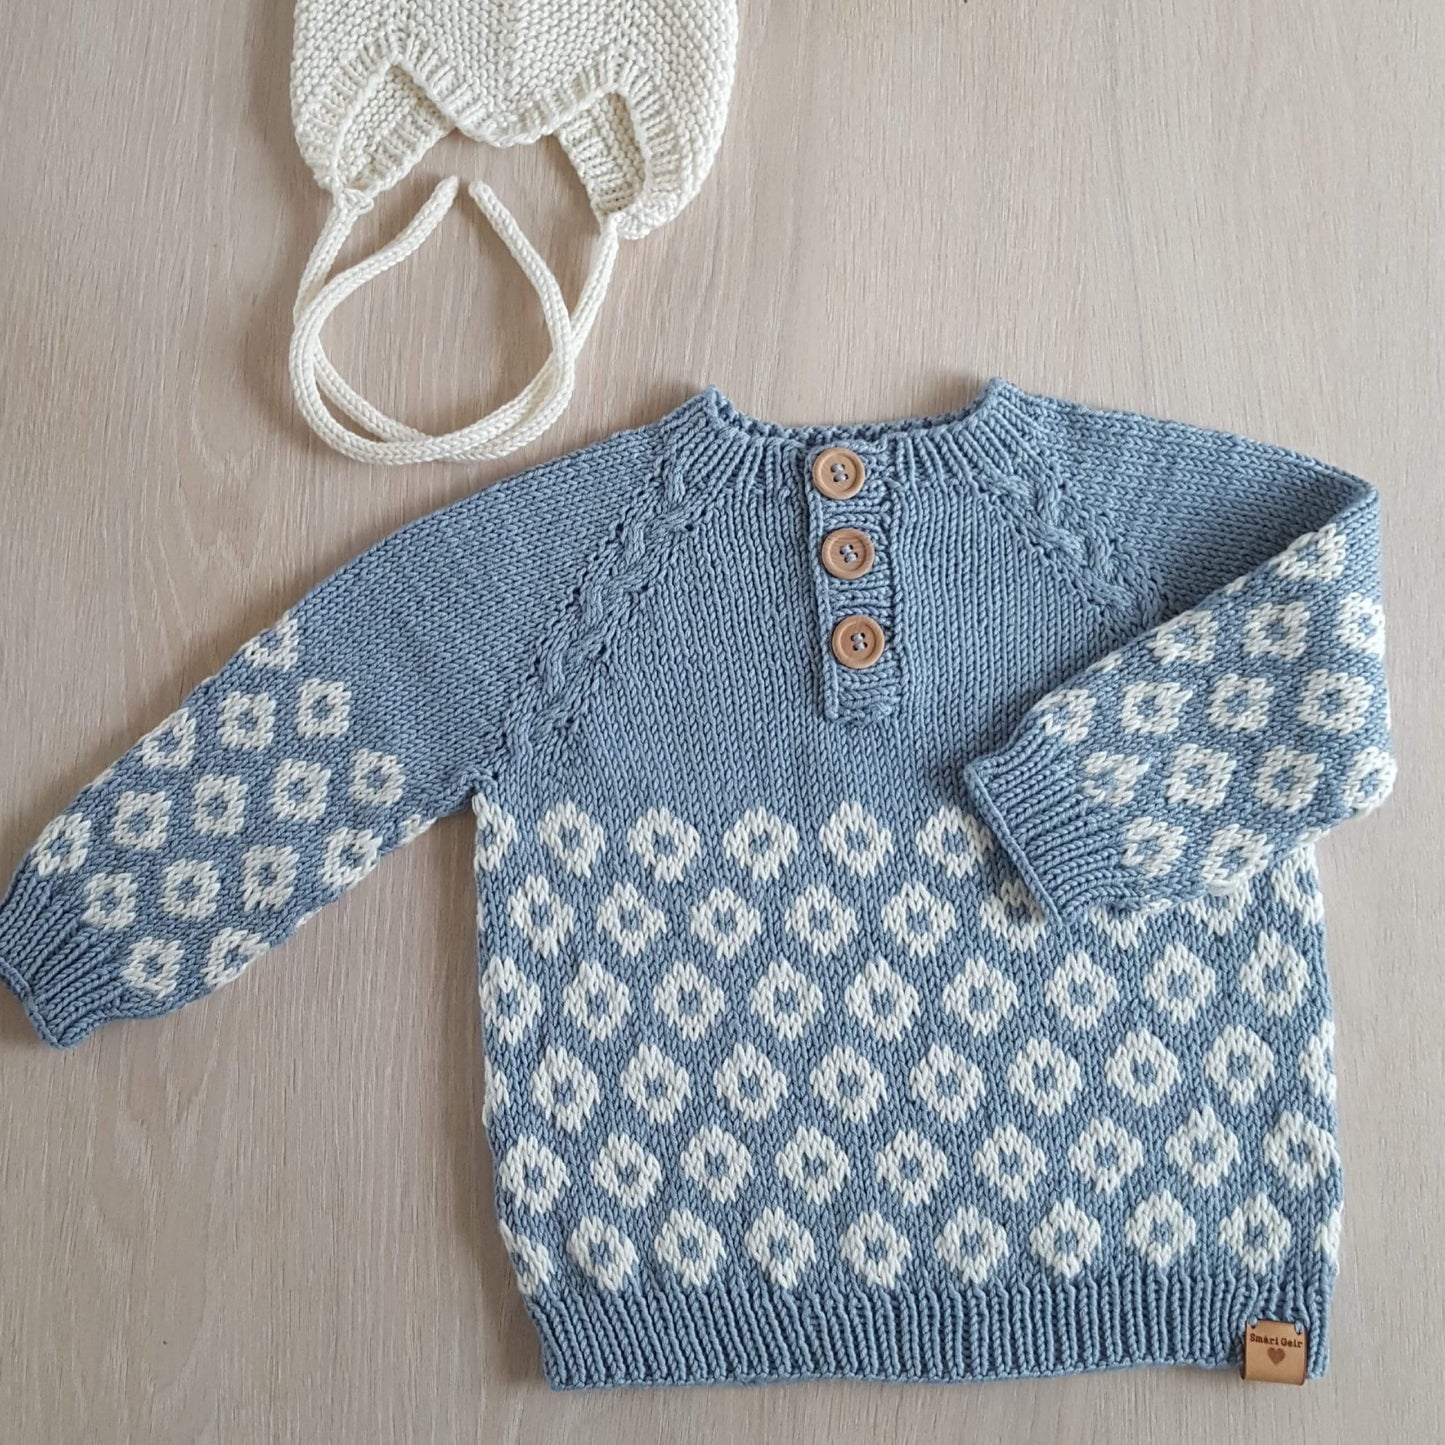 Feykir children's sweater